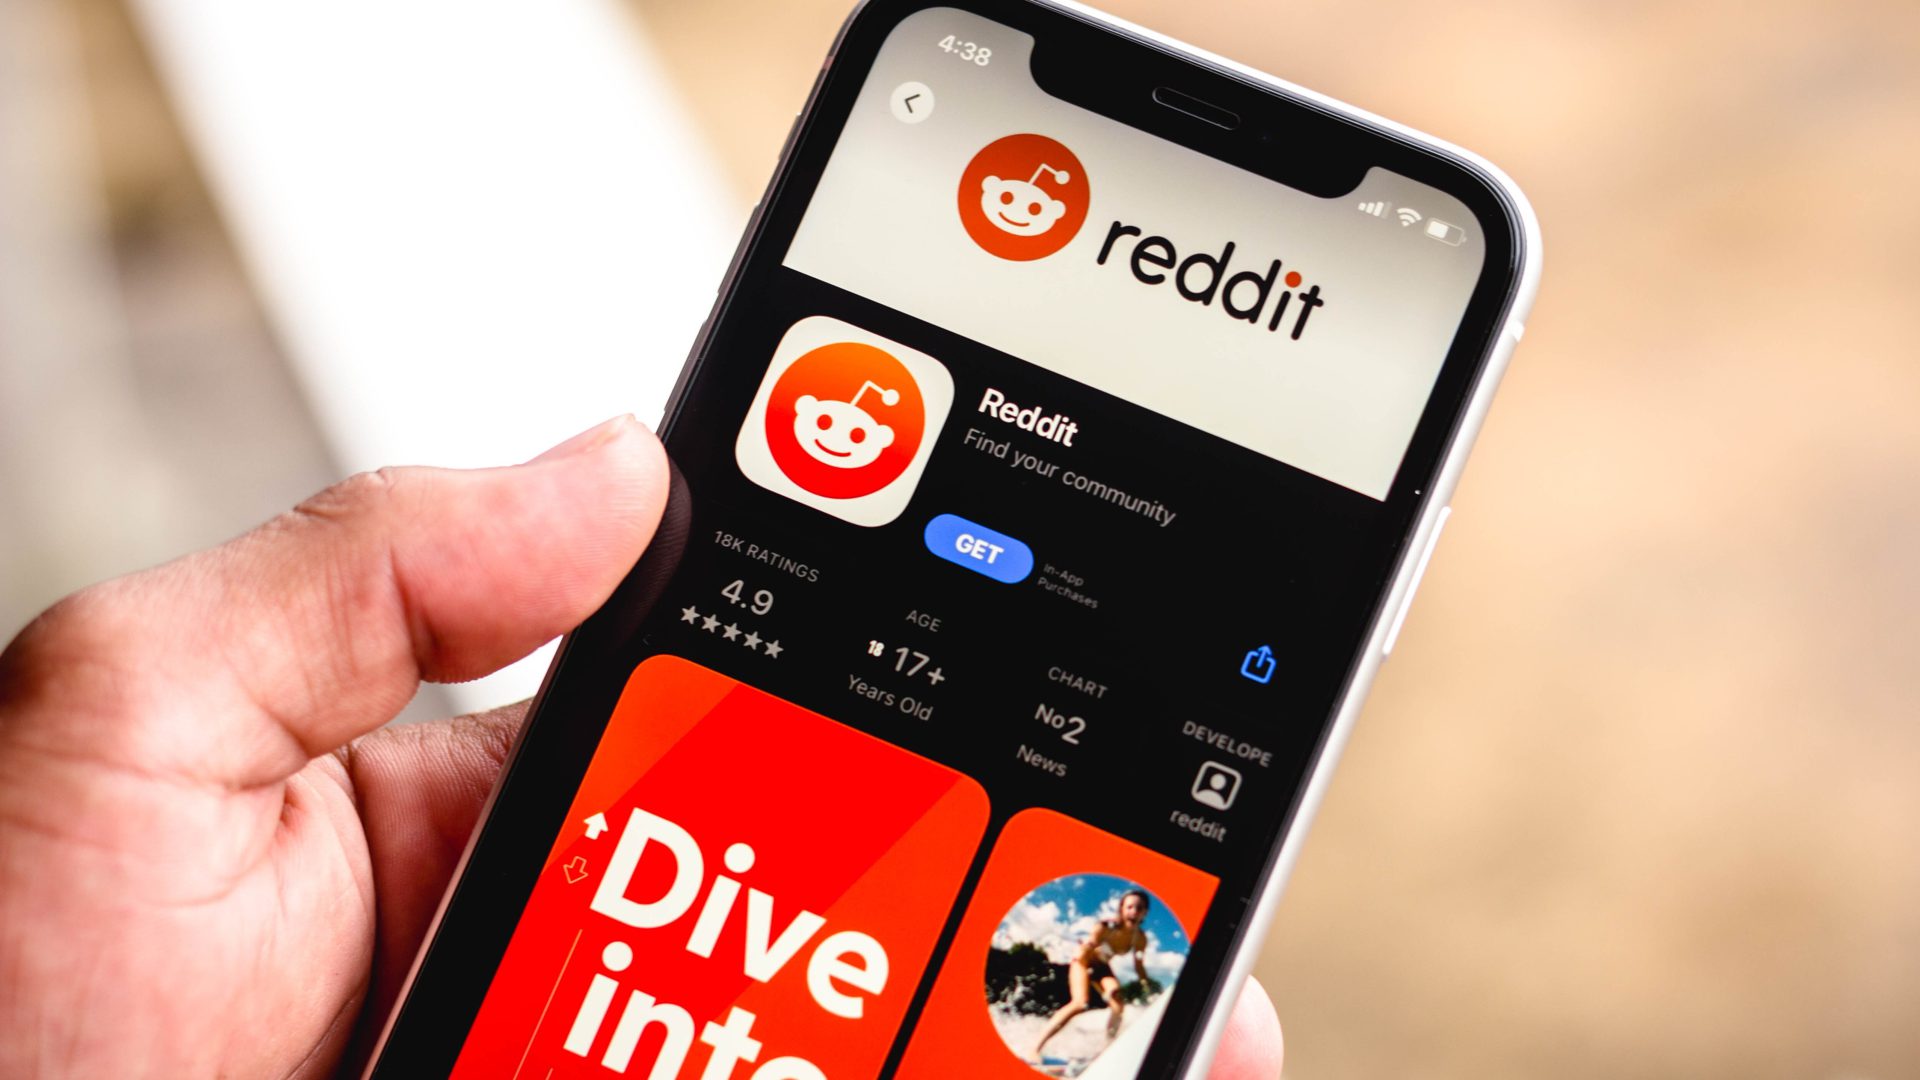 Reddit — A Significant Social Media Platform